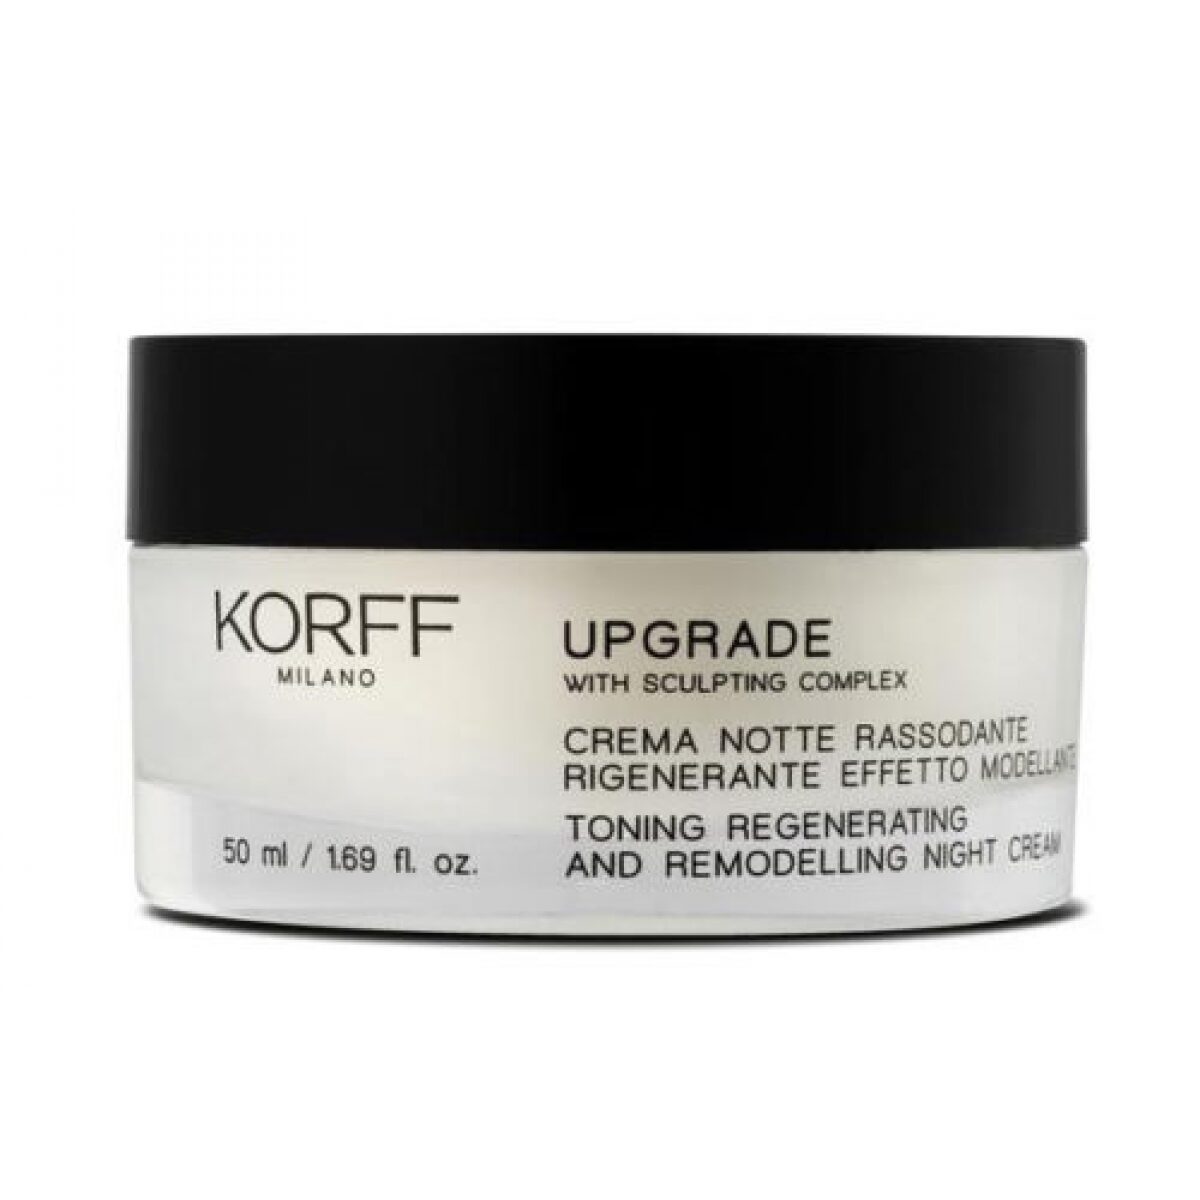 Korff Upgrade Toning & Remodeling Night Cream